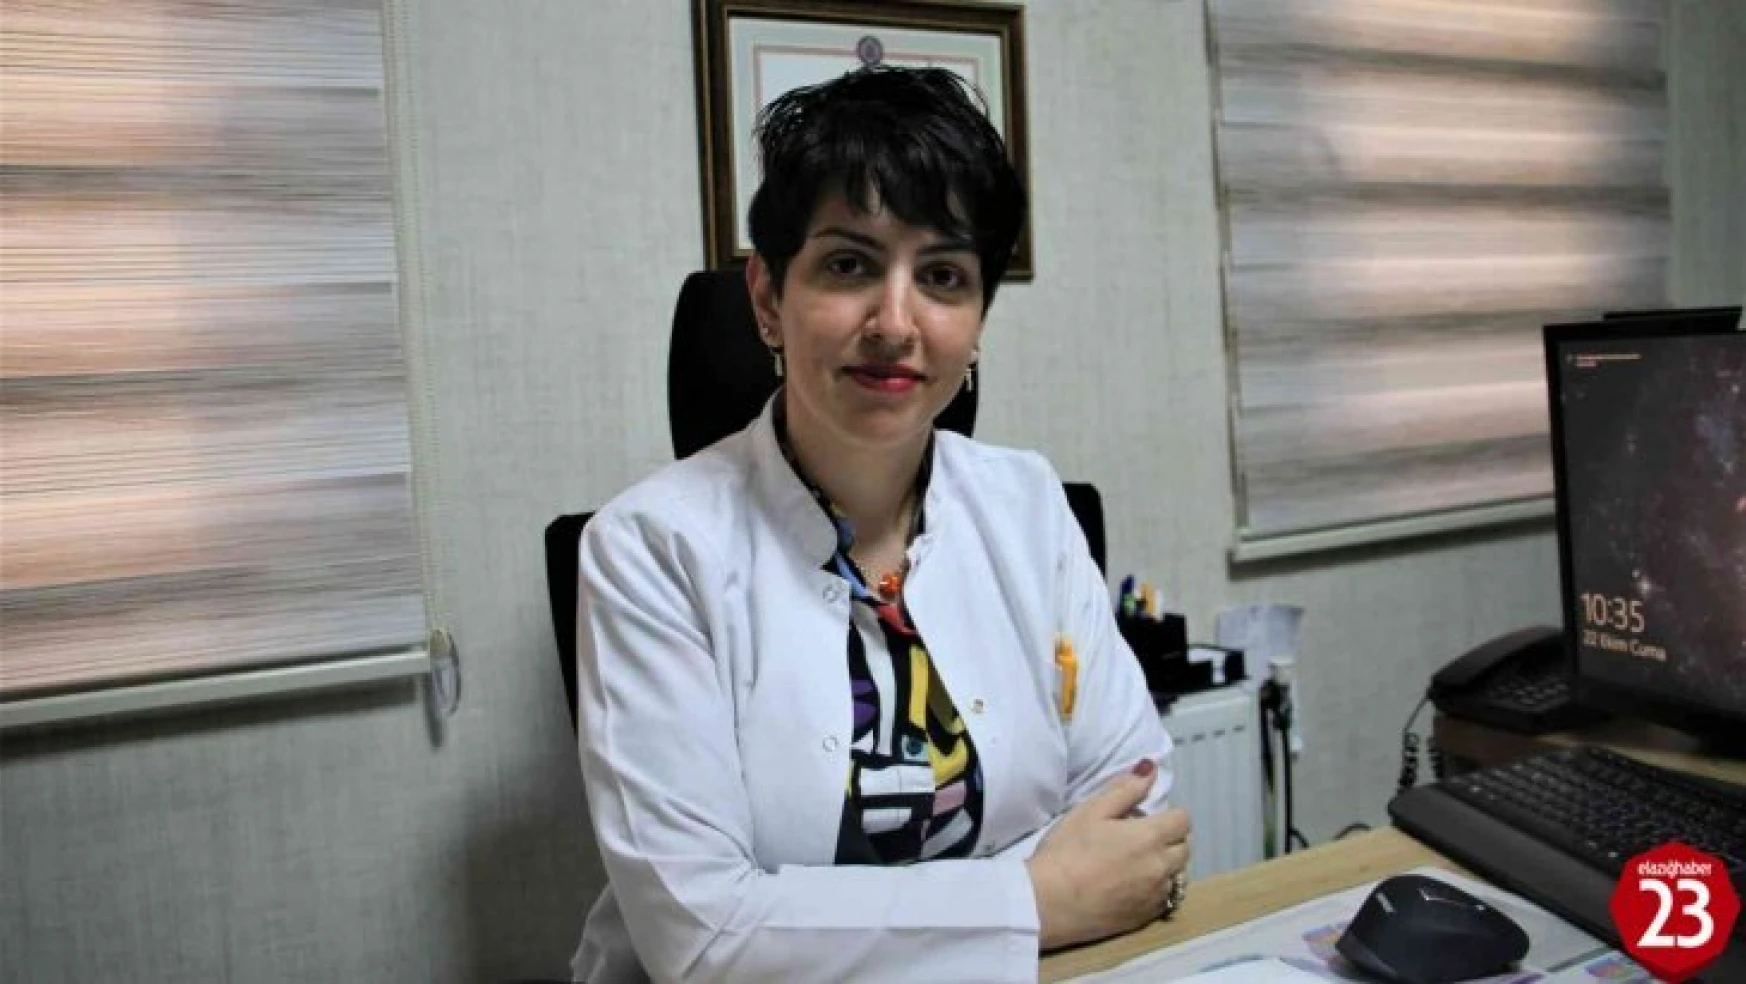 İç Hastalıkları Uzmanı Dr. Yalçınkaya: 'Ülkemizde her 3 hastadan biri hipertansiyon ile karşı karşıya'